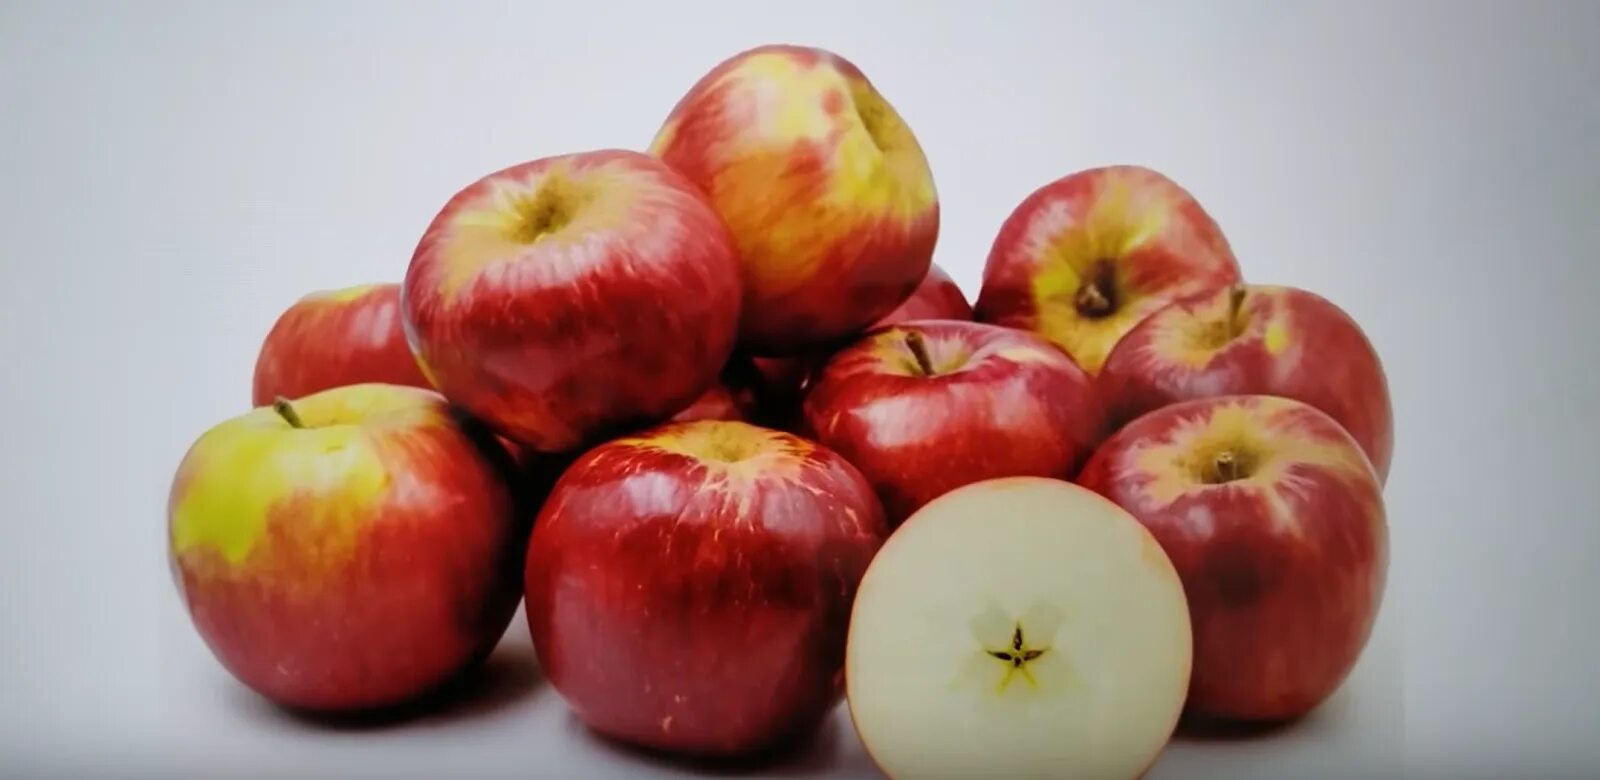 2 килограмм яблок. Яблоня Джонатан. Сорт яблок Джонатан. Сорт Джонатан. Яблоки красные сорта Джонатан.